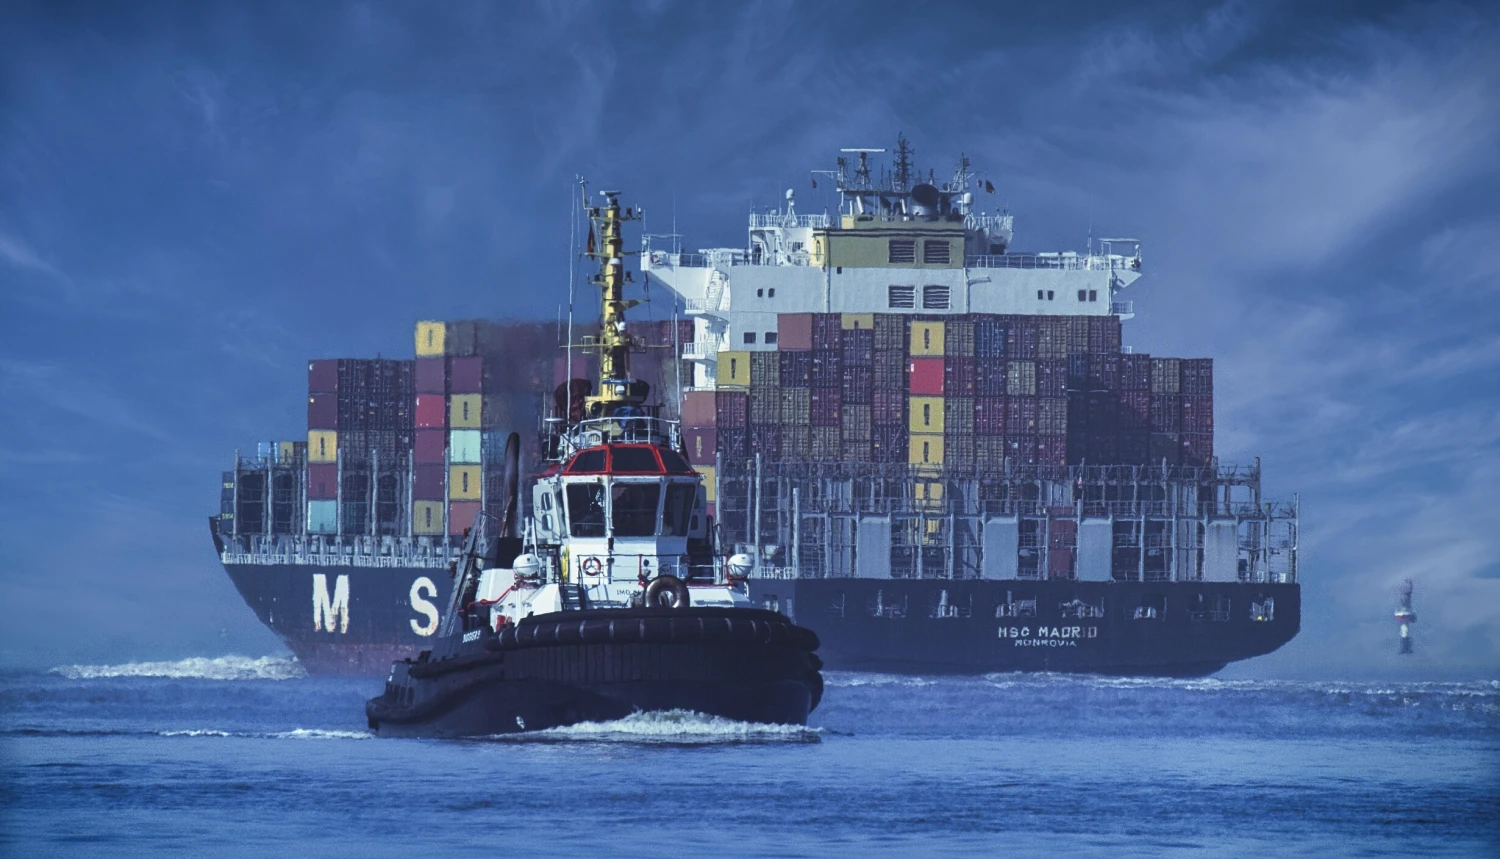 Útoky Húsíů dále komplikují námořní obchod. Náklady na dopravu rapidně rostou